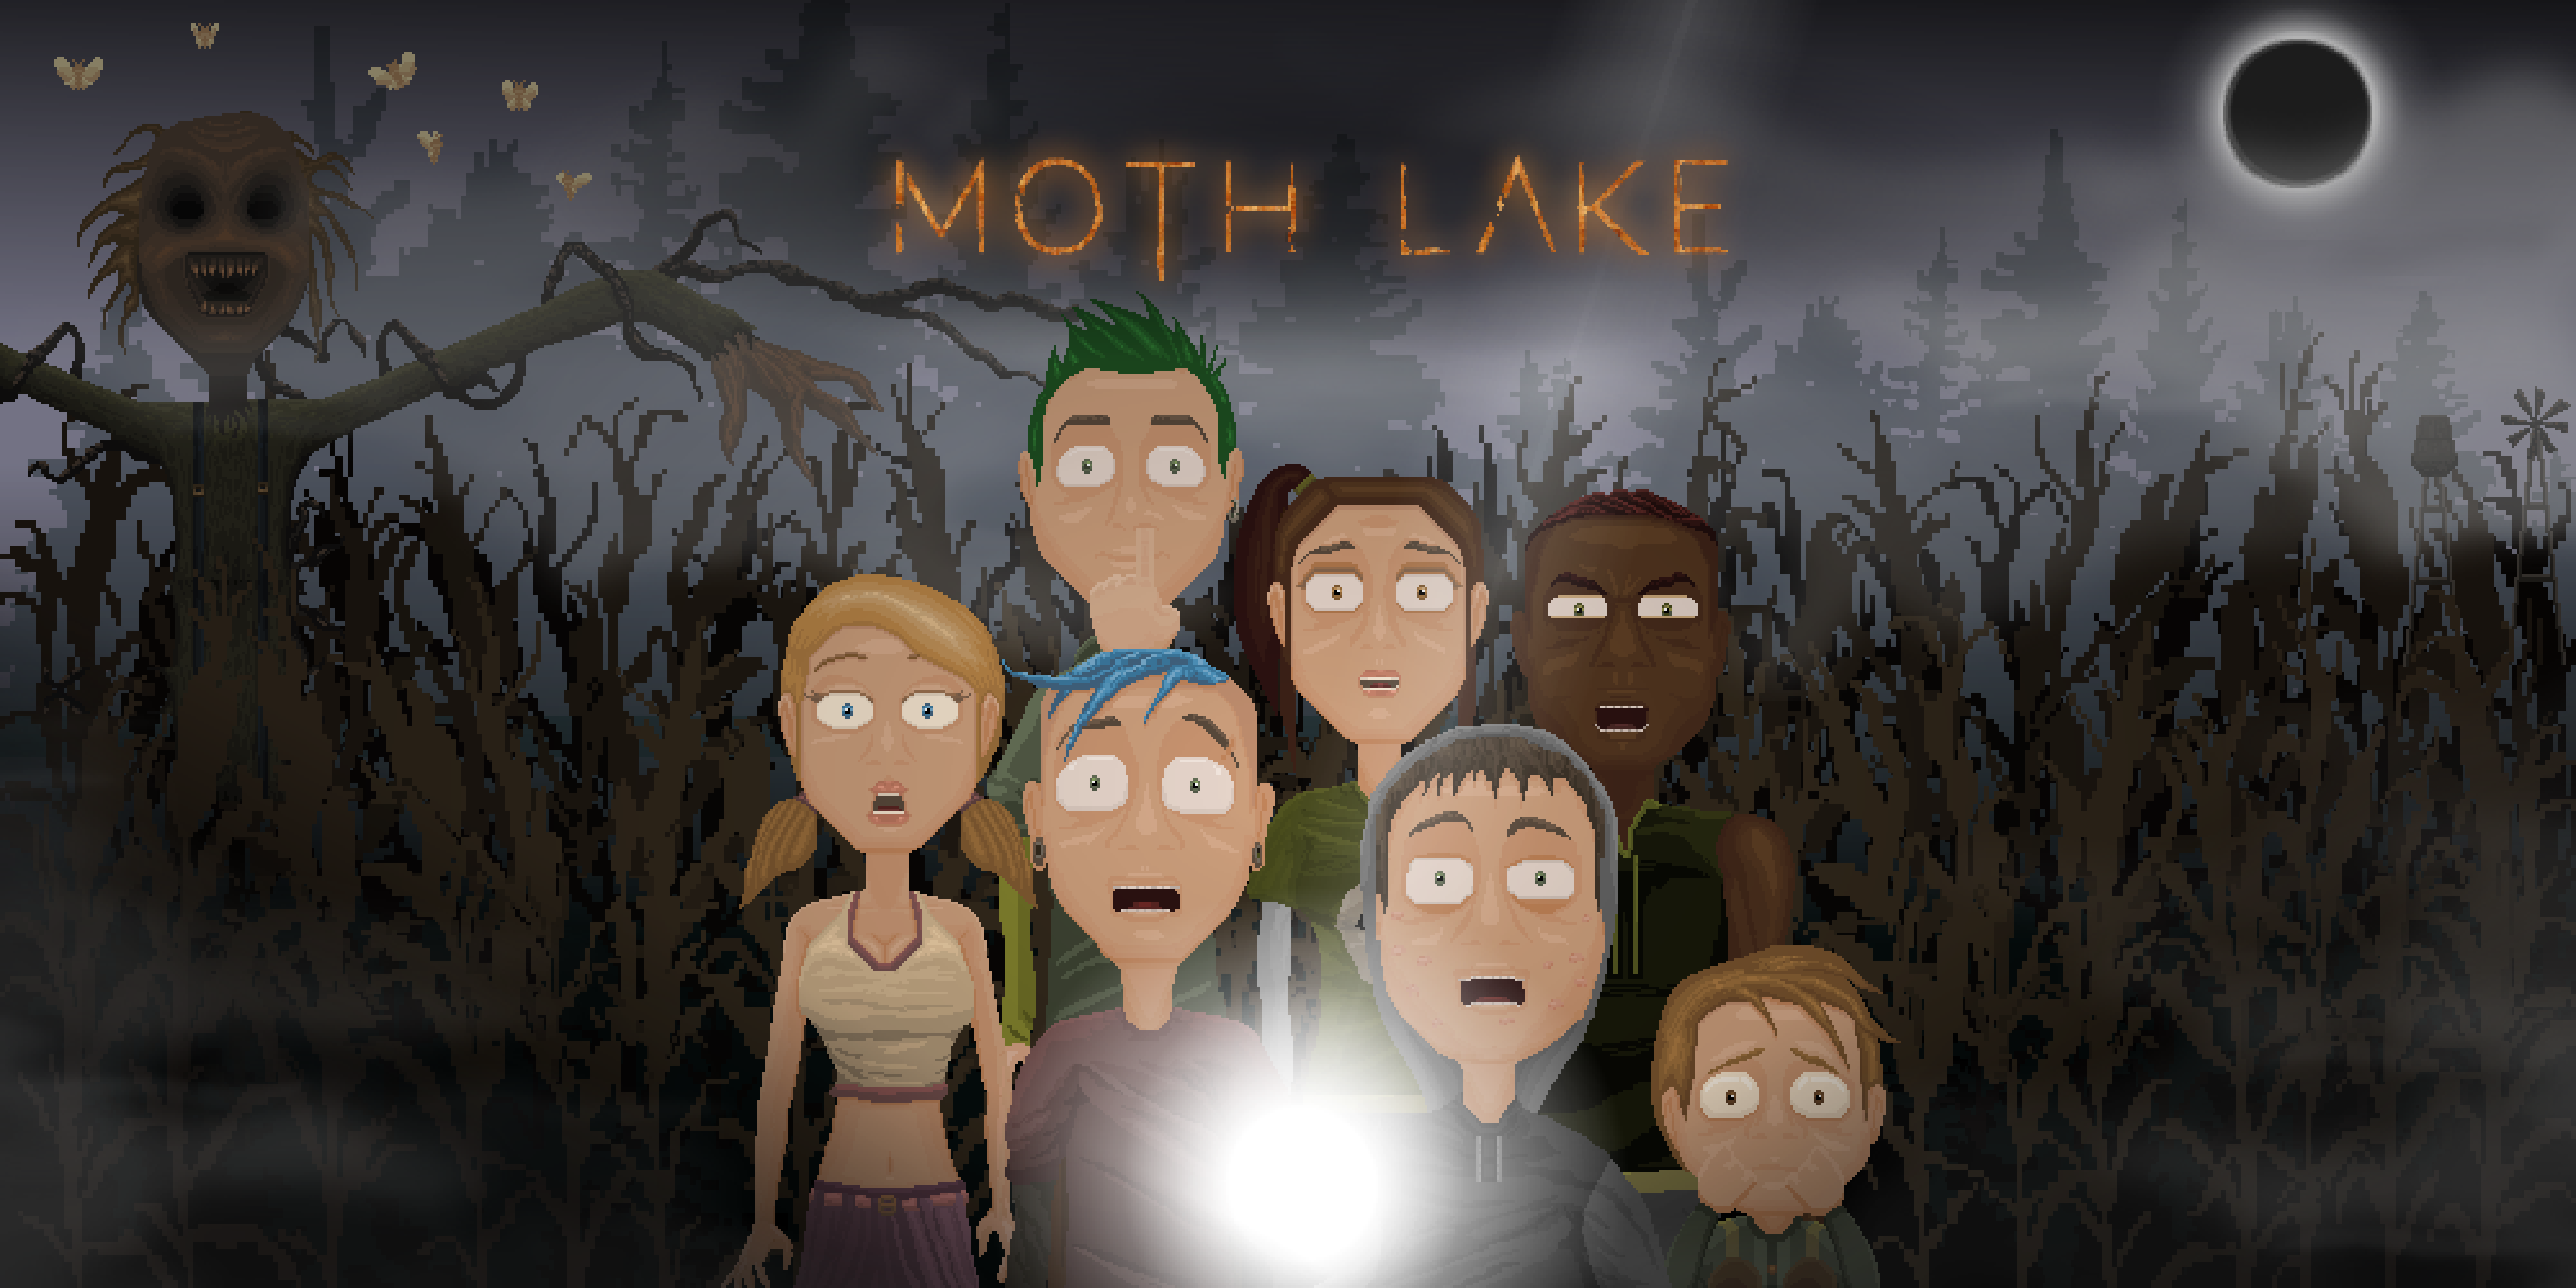 Moth Lake